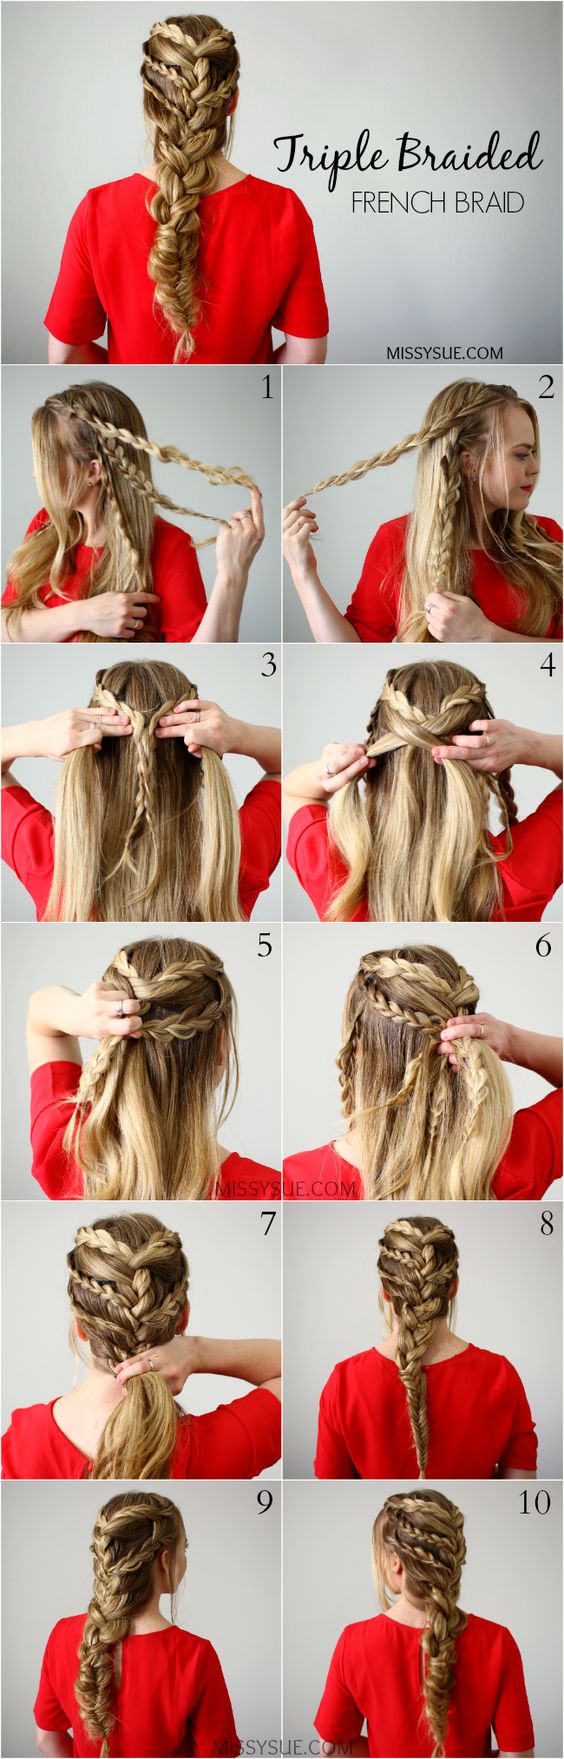 Triple braided hair